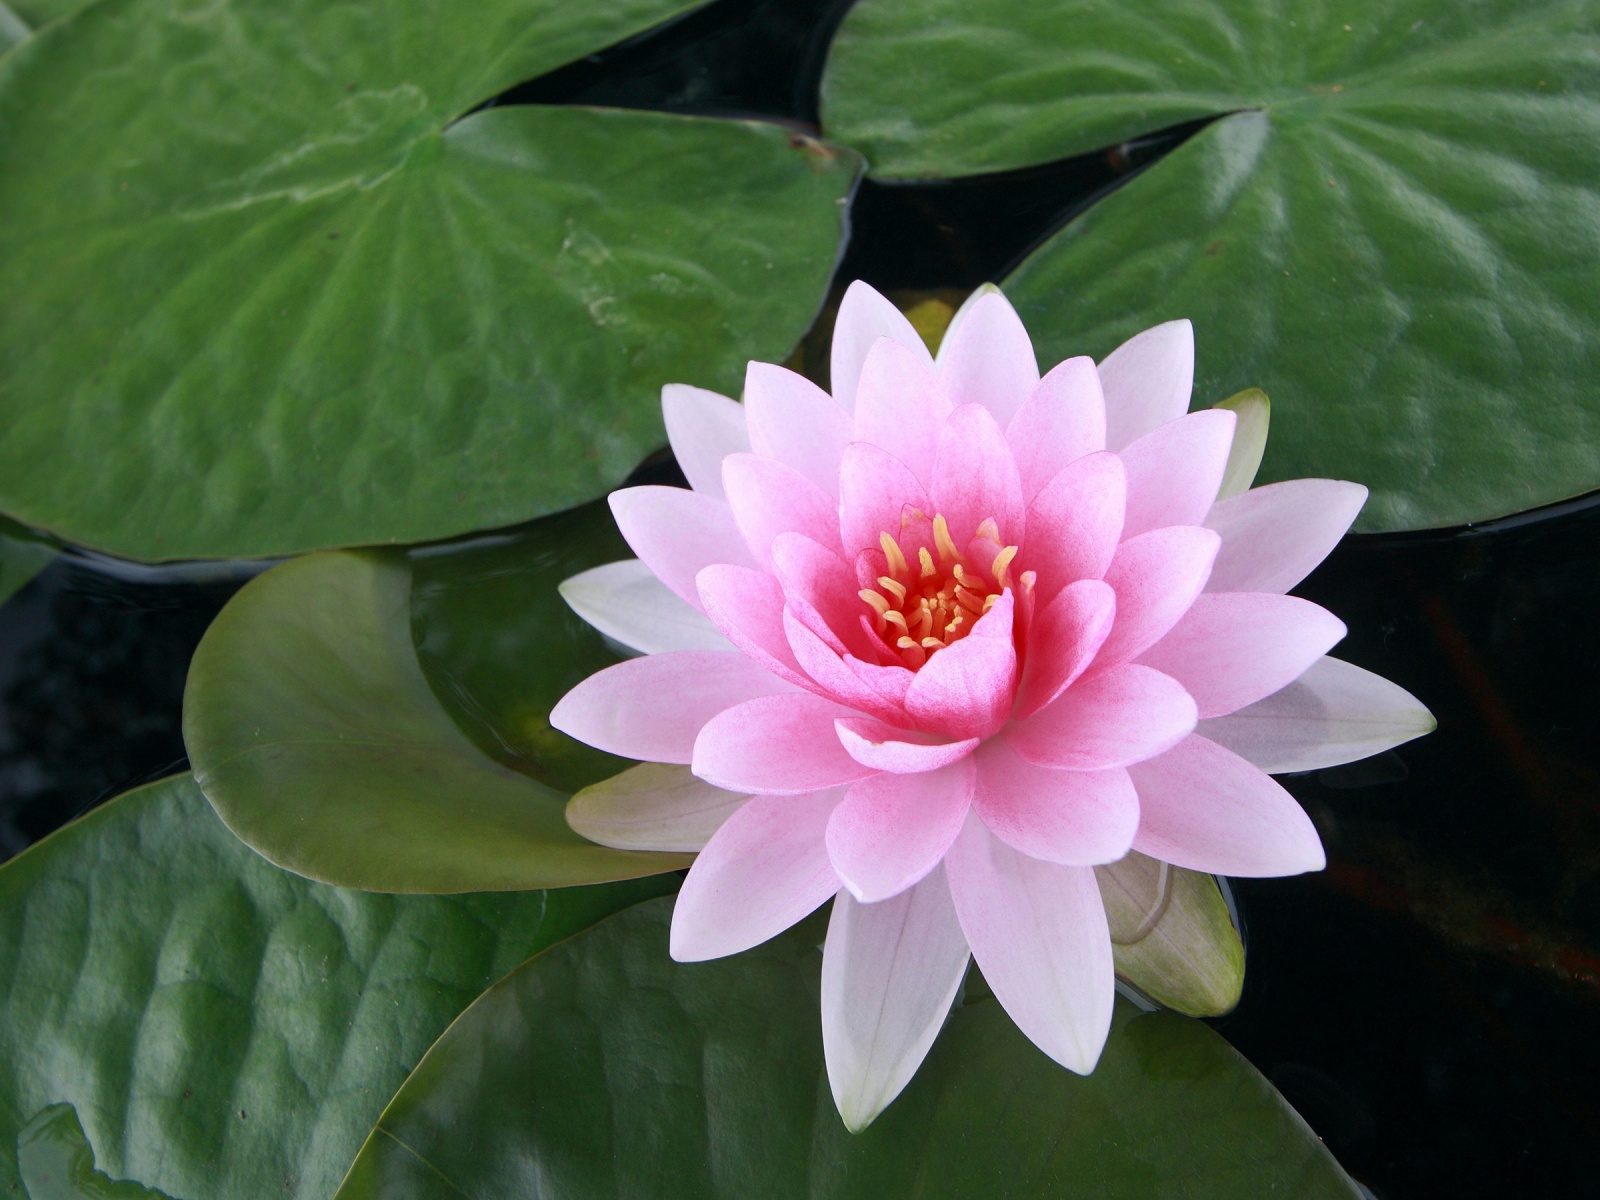 pinkish white lotus flower photo